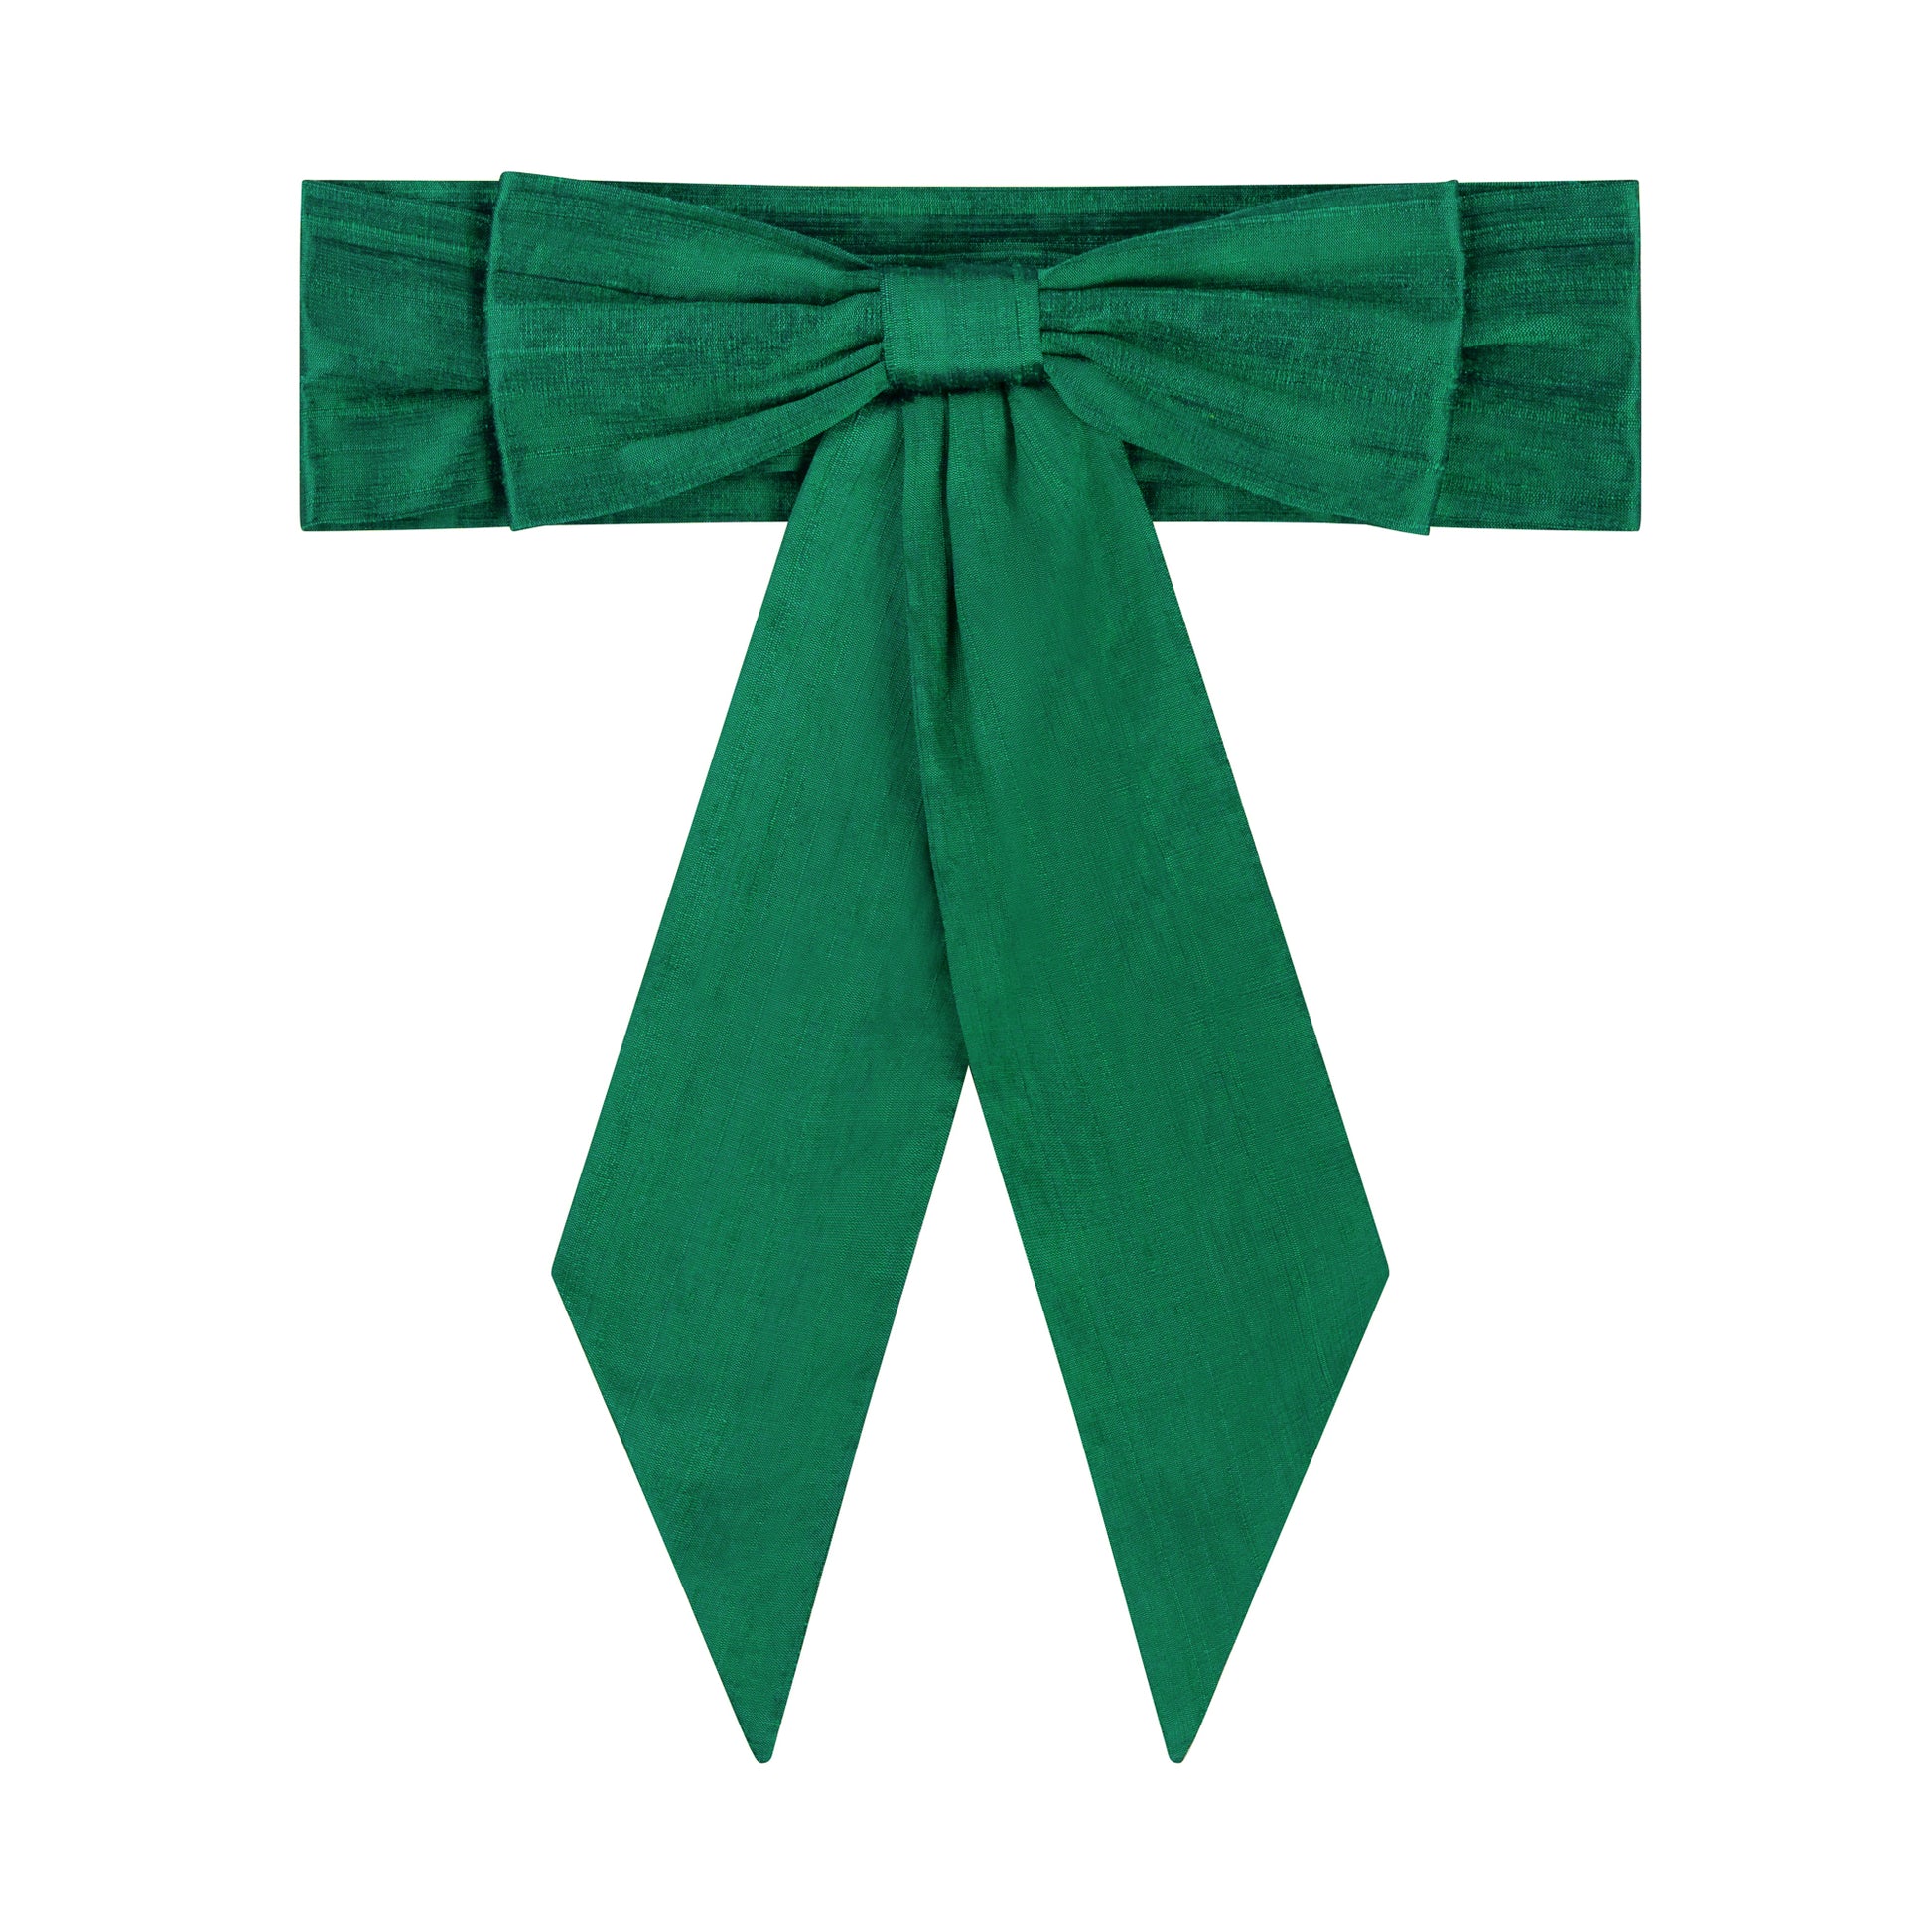 Amelia Brennan - Emerald Green Silk Bridesmaid Bow